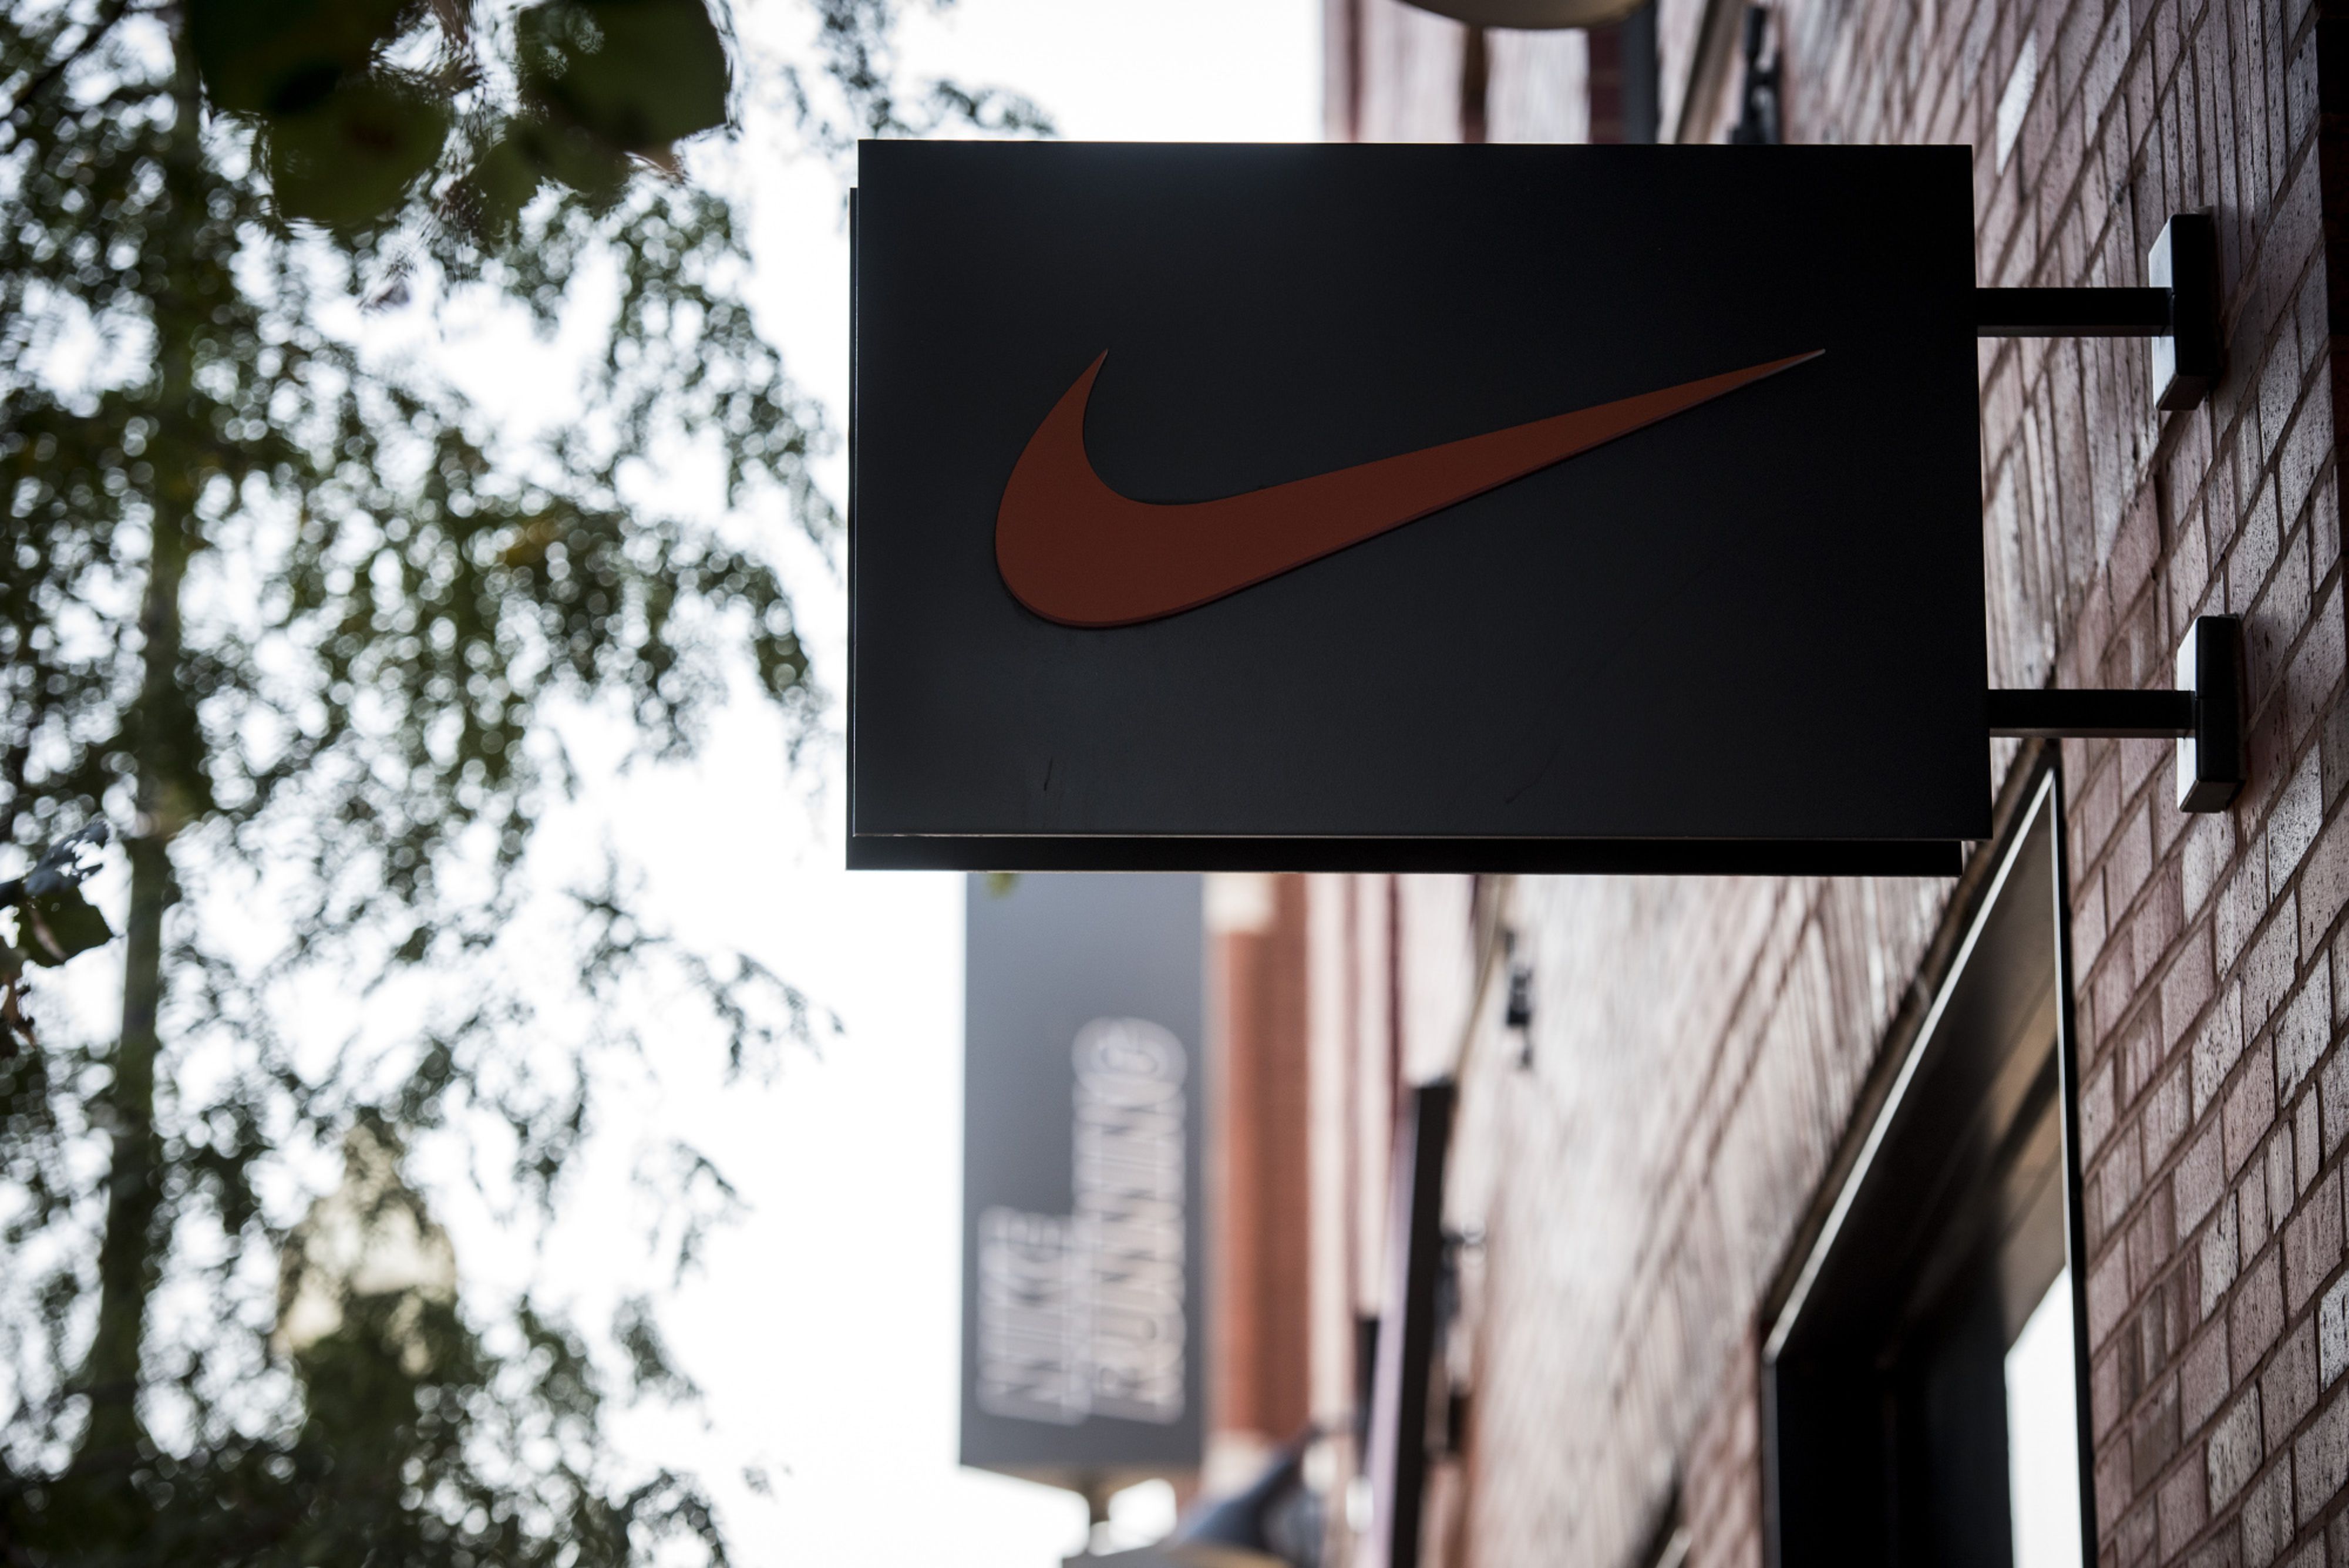 Nike se adentra en el metaverso a través de Roblox - Tradesport